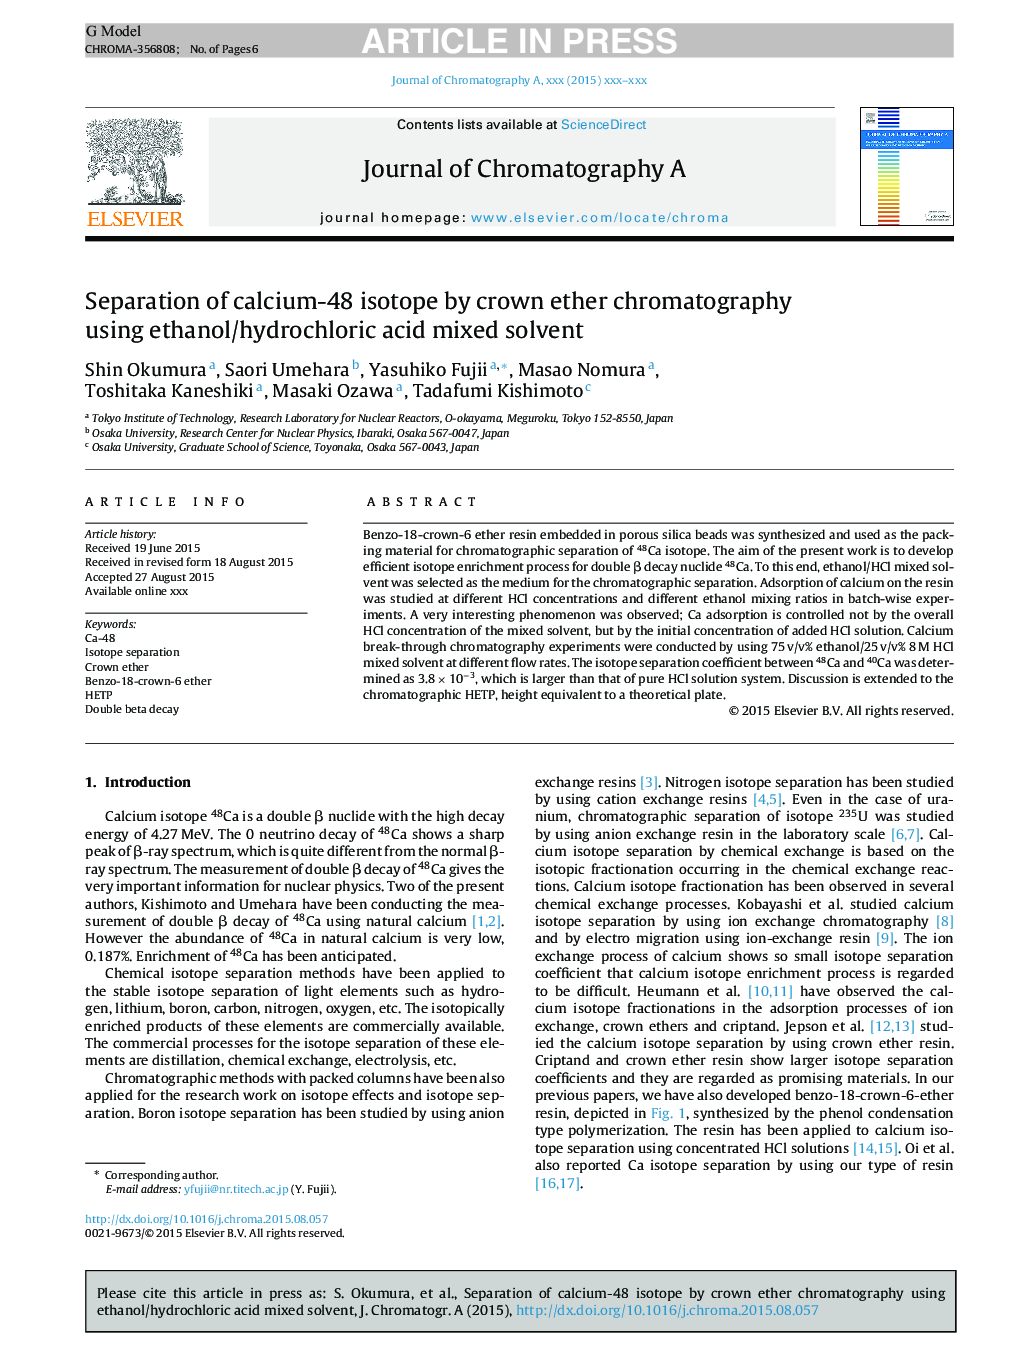 جداسازی ایزوتوپ کلسیم -48 با استفاده از کروماتوگرافی ترانس اتر با استفاده از حلال مخلوط اتانول / اسید هیدروکلریک 